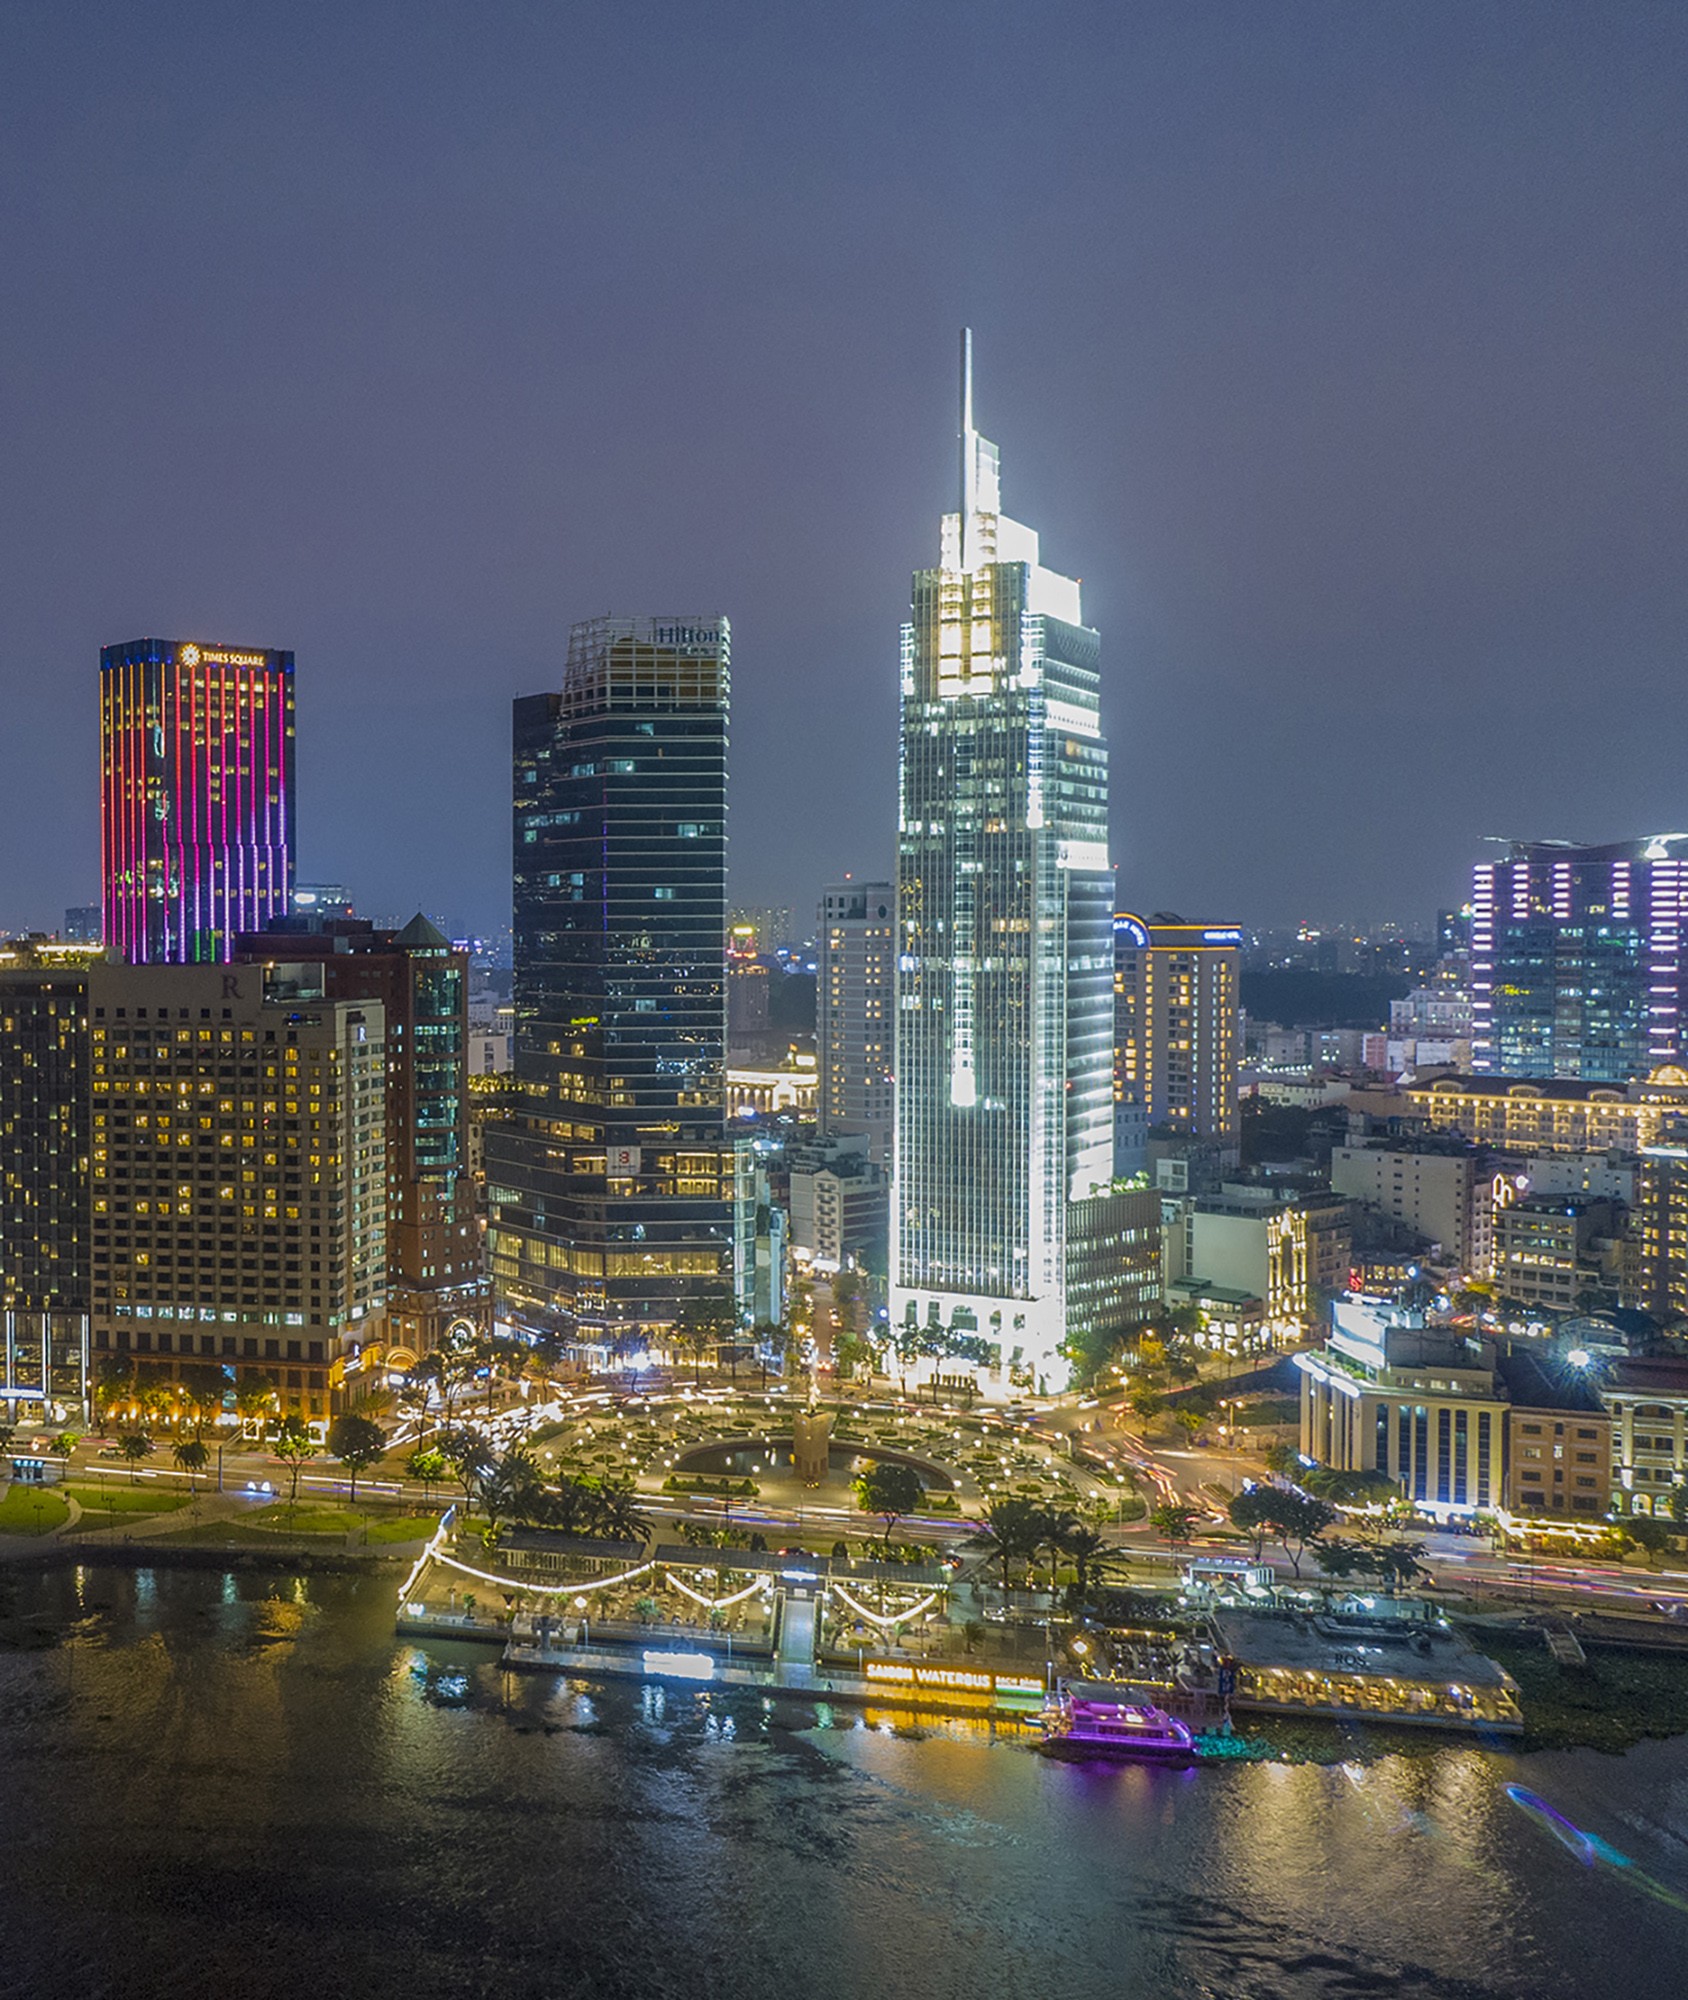 Vietcombank Tower nổi bật, thu hút người nhìn từ mọi hướng bởi vẻ đẹp hiện đại và độc đáo ở vòng xoay Công trường Mê Linh. Về đêm, toà nhà rực sáng bên sông Sài Gòn.